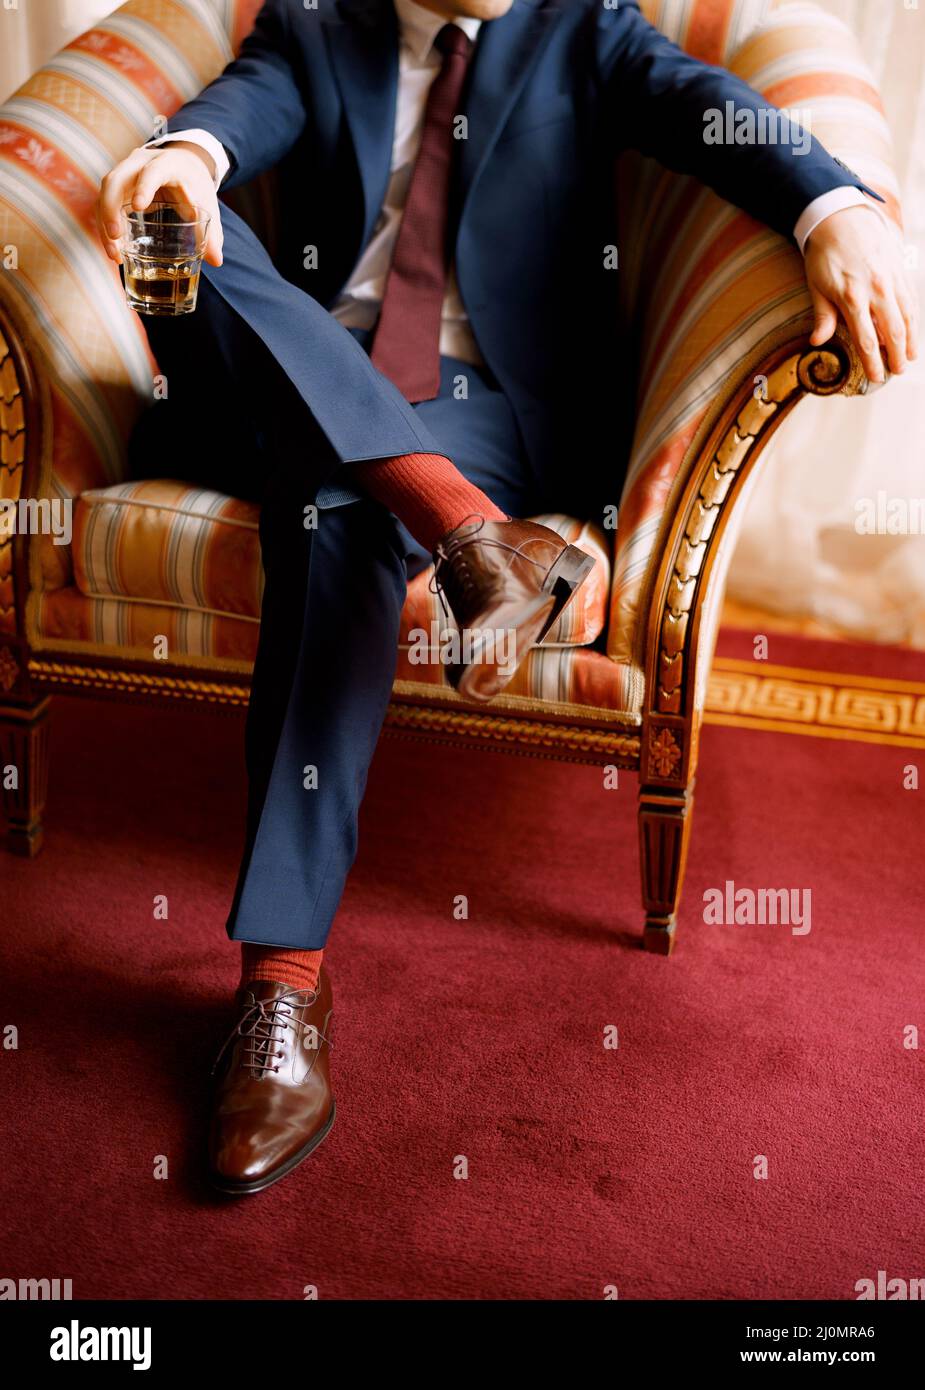 Le gambe di un uomo in pantaloni blu, calzini rossi e scarpe marroni seduti nella sedia che tiene il vetro in una mano Foto Stock